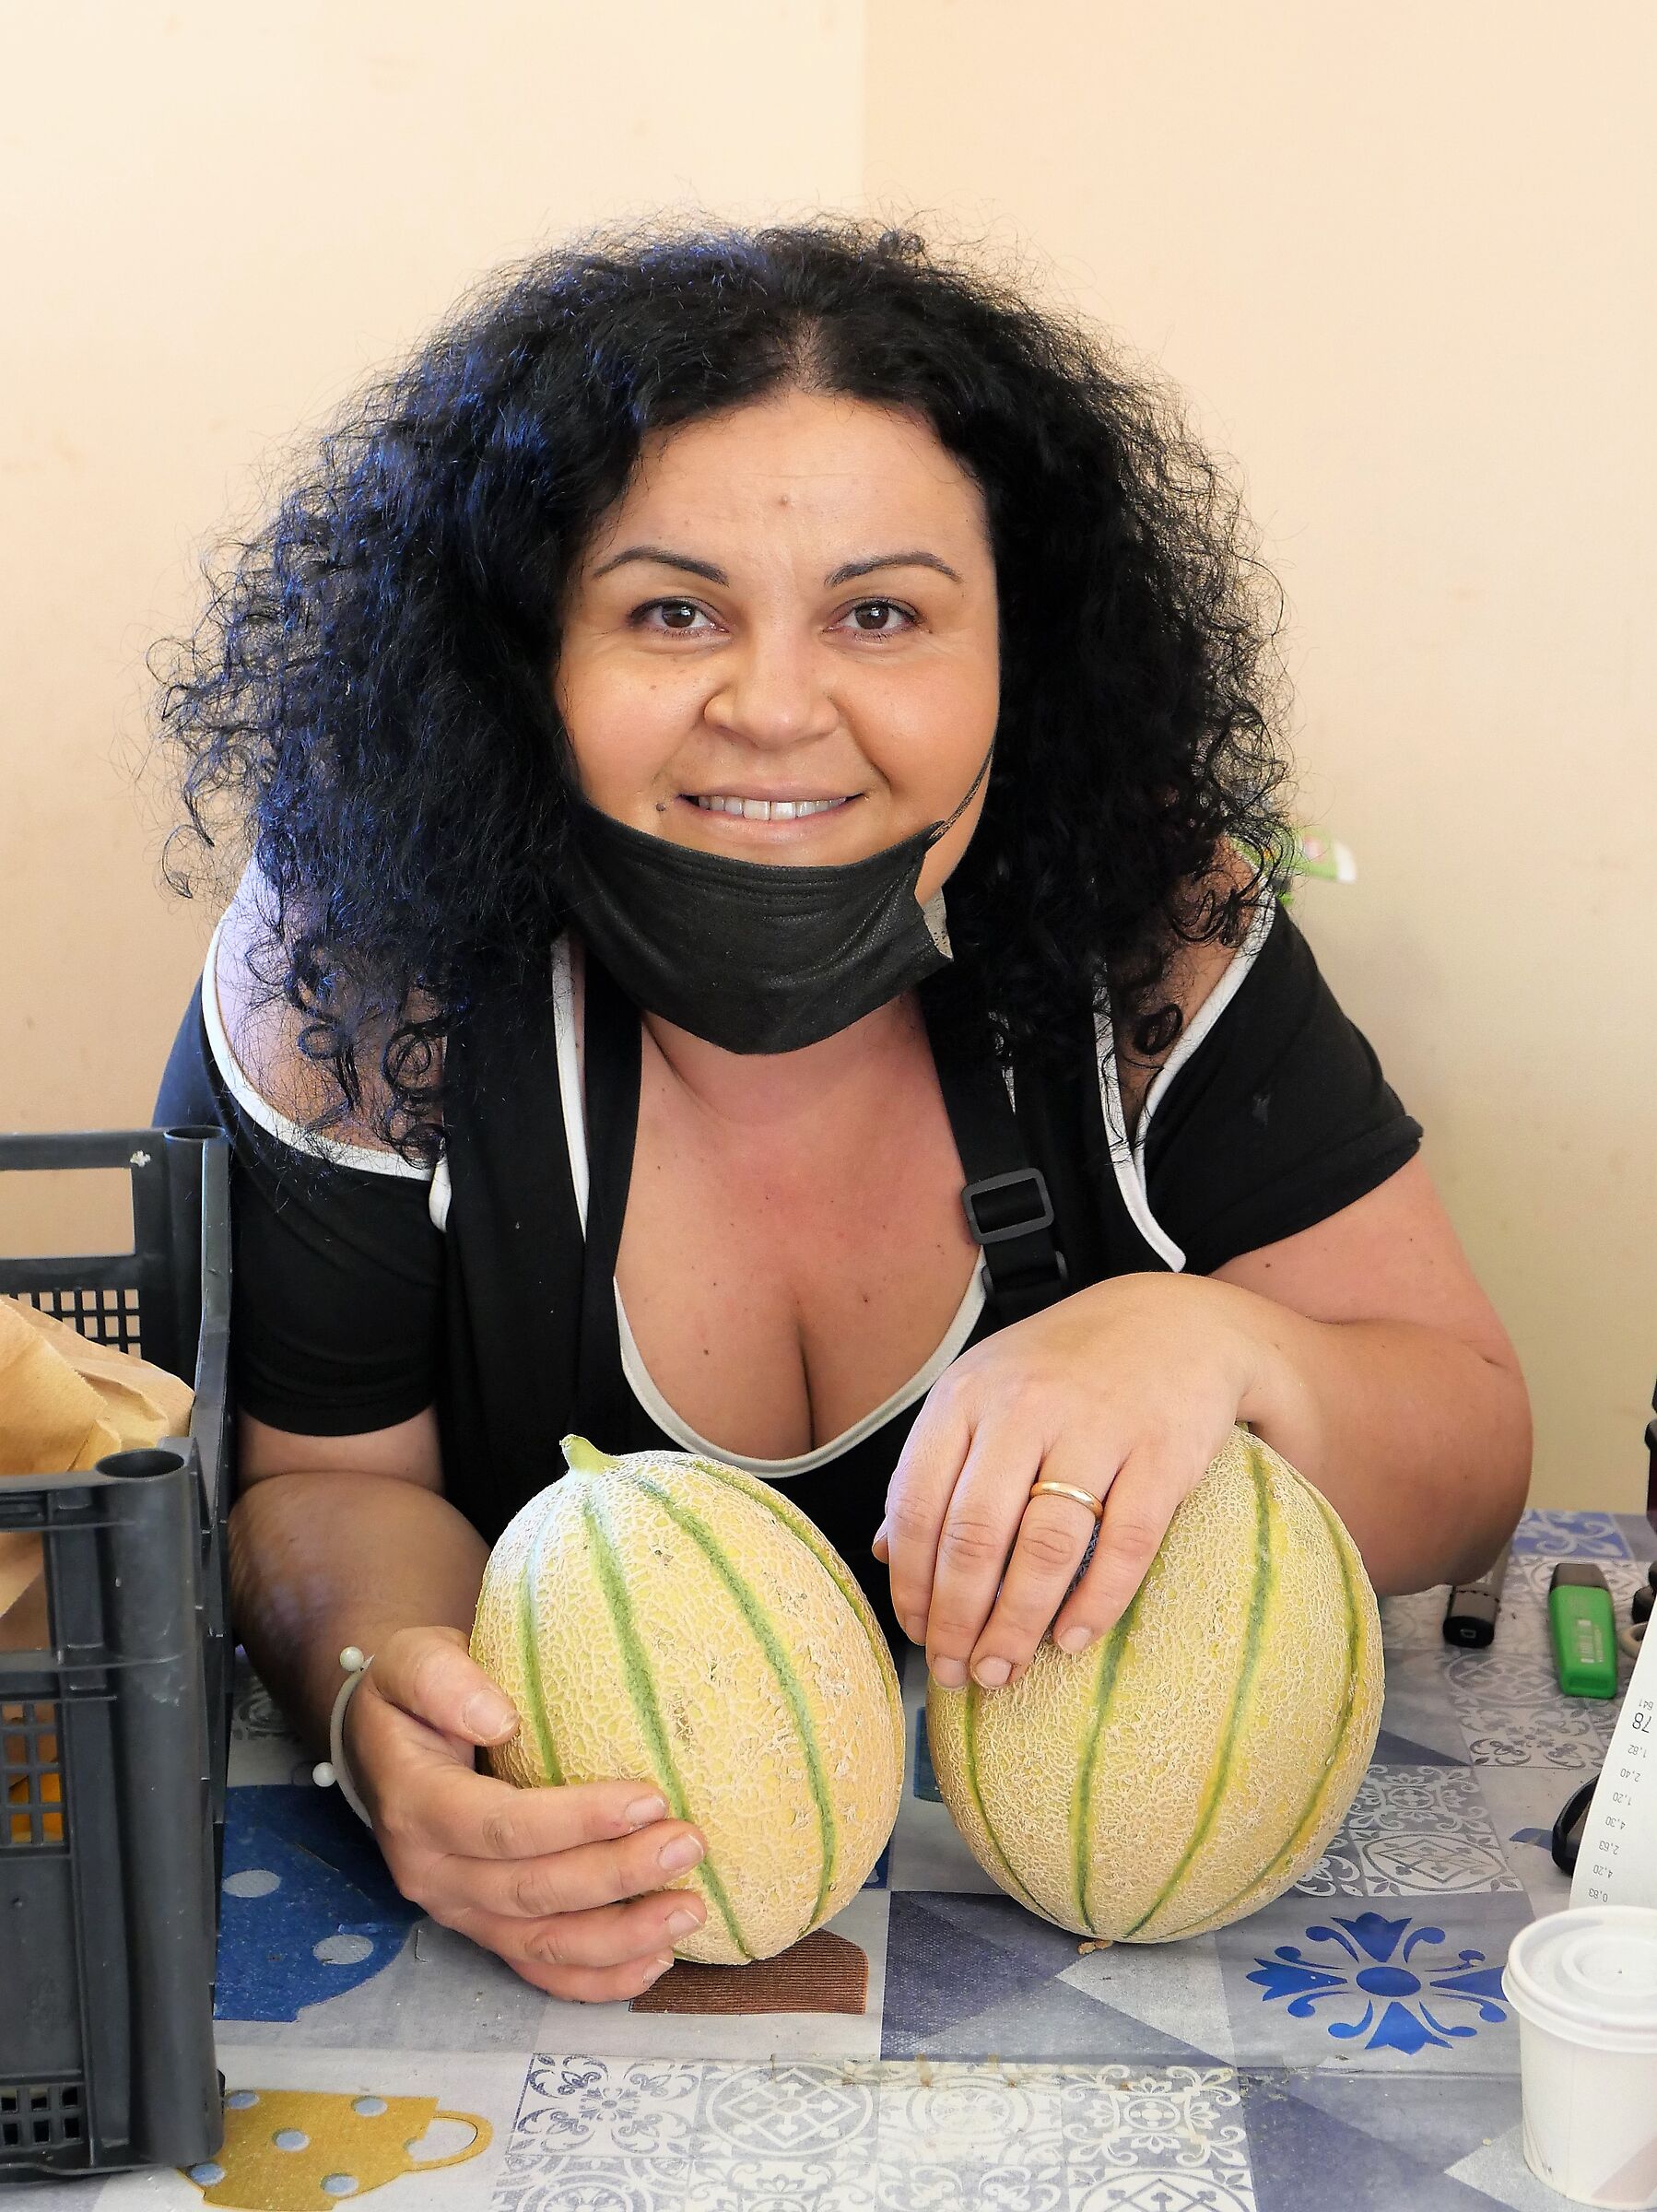 Mariella, mi vende i suoi meloni!...